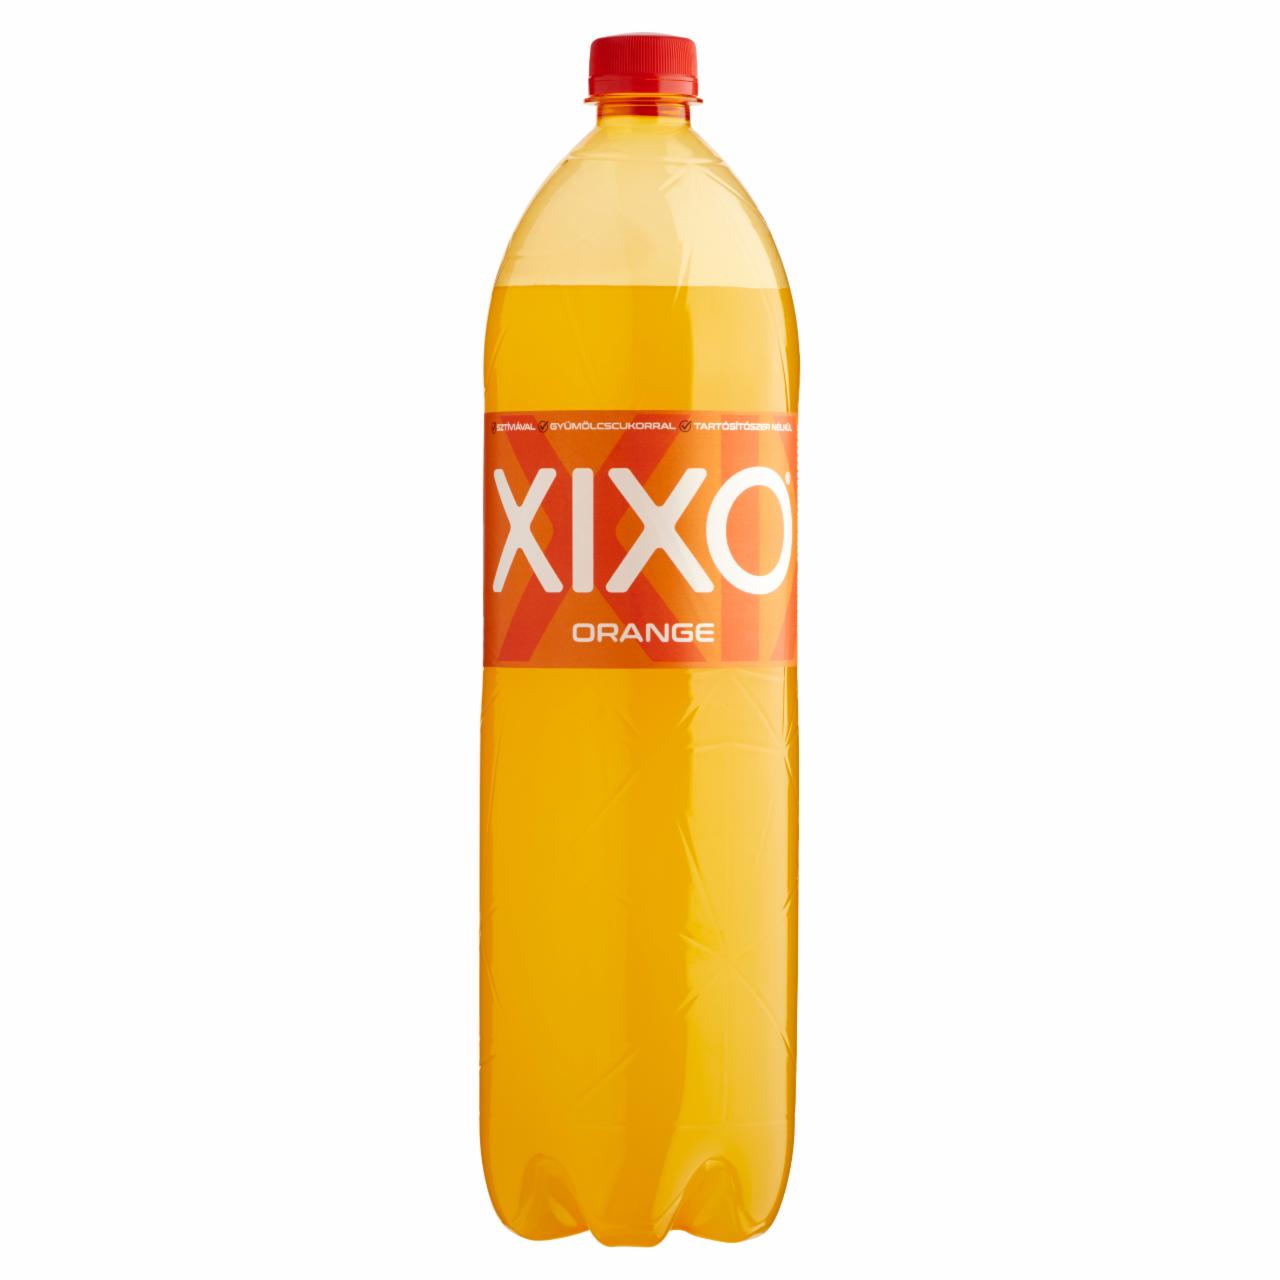 Képek - XIXO Orange narancsízű szénsavas üdítőital cukorral és édesítőszerrel 1,5 l